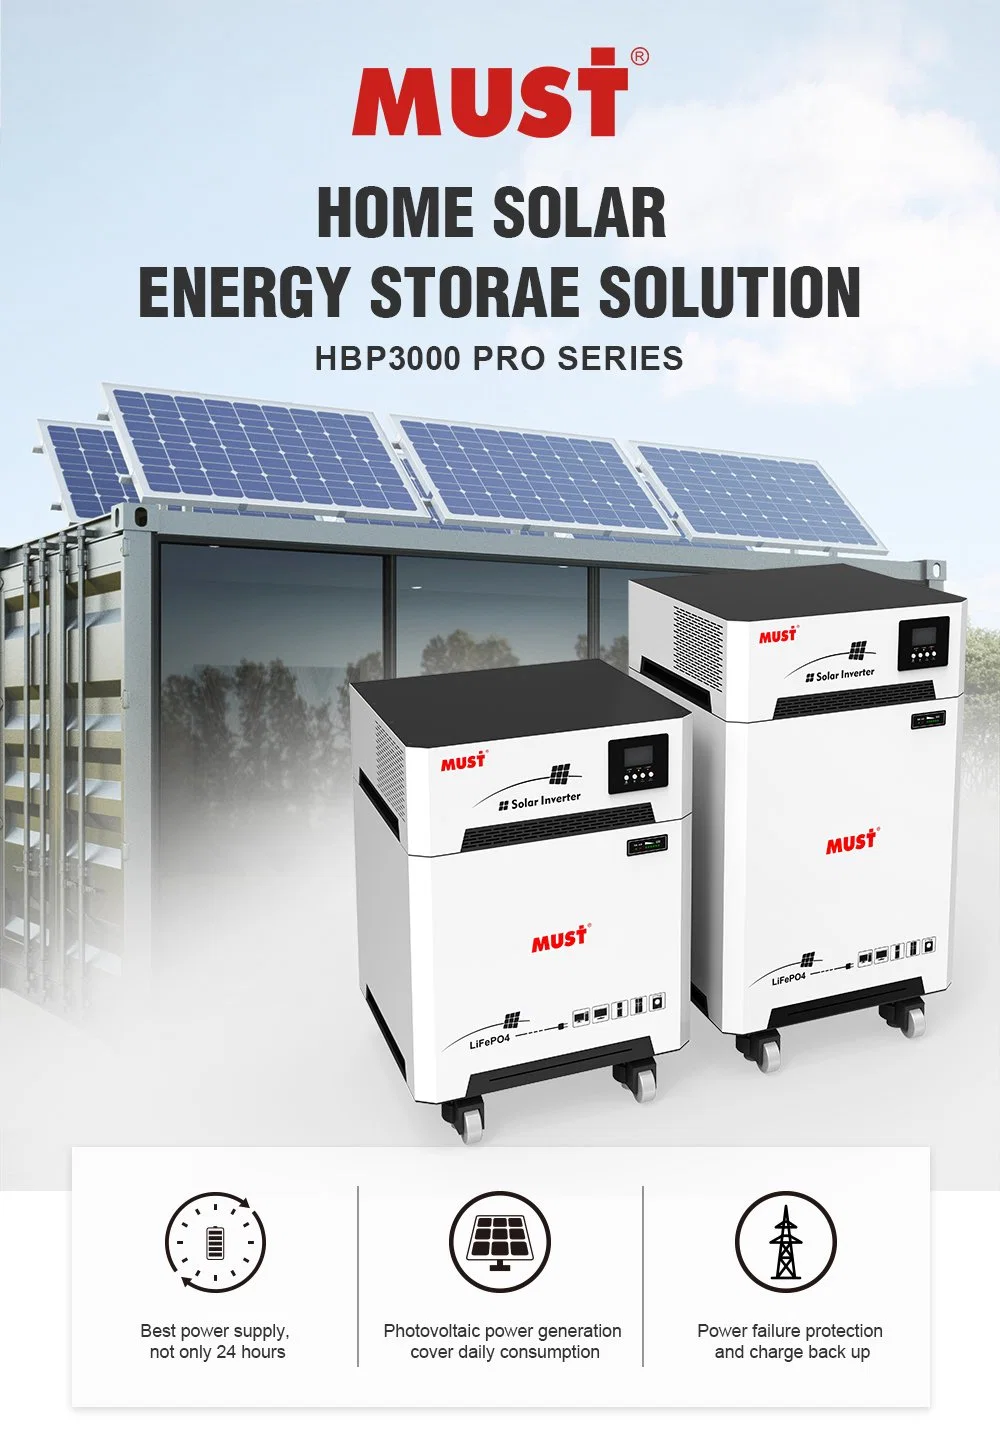 LiFePO4 Batterie mit Niederfrequenz-Solar-Wechselrichter kann die Ausgabe Gleichstrom (DC) vom Dach-Solar-PV-Array in Wechselstrom (AC)